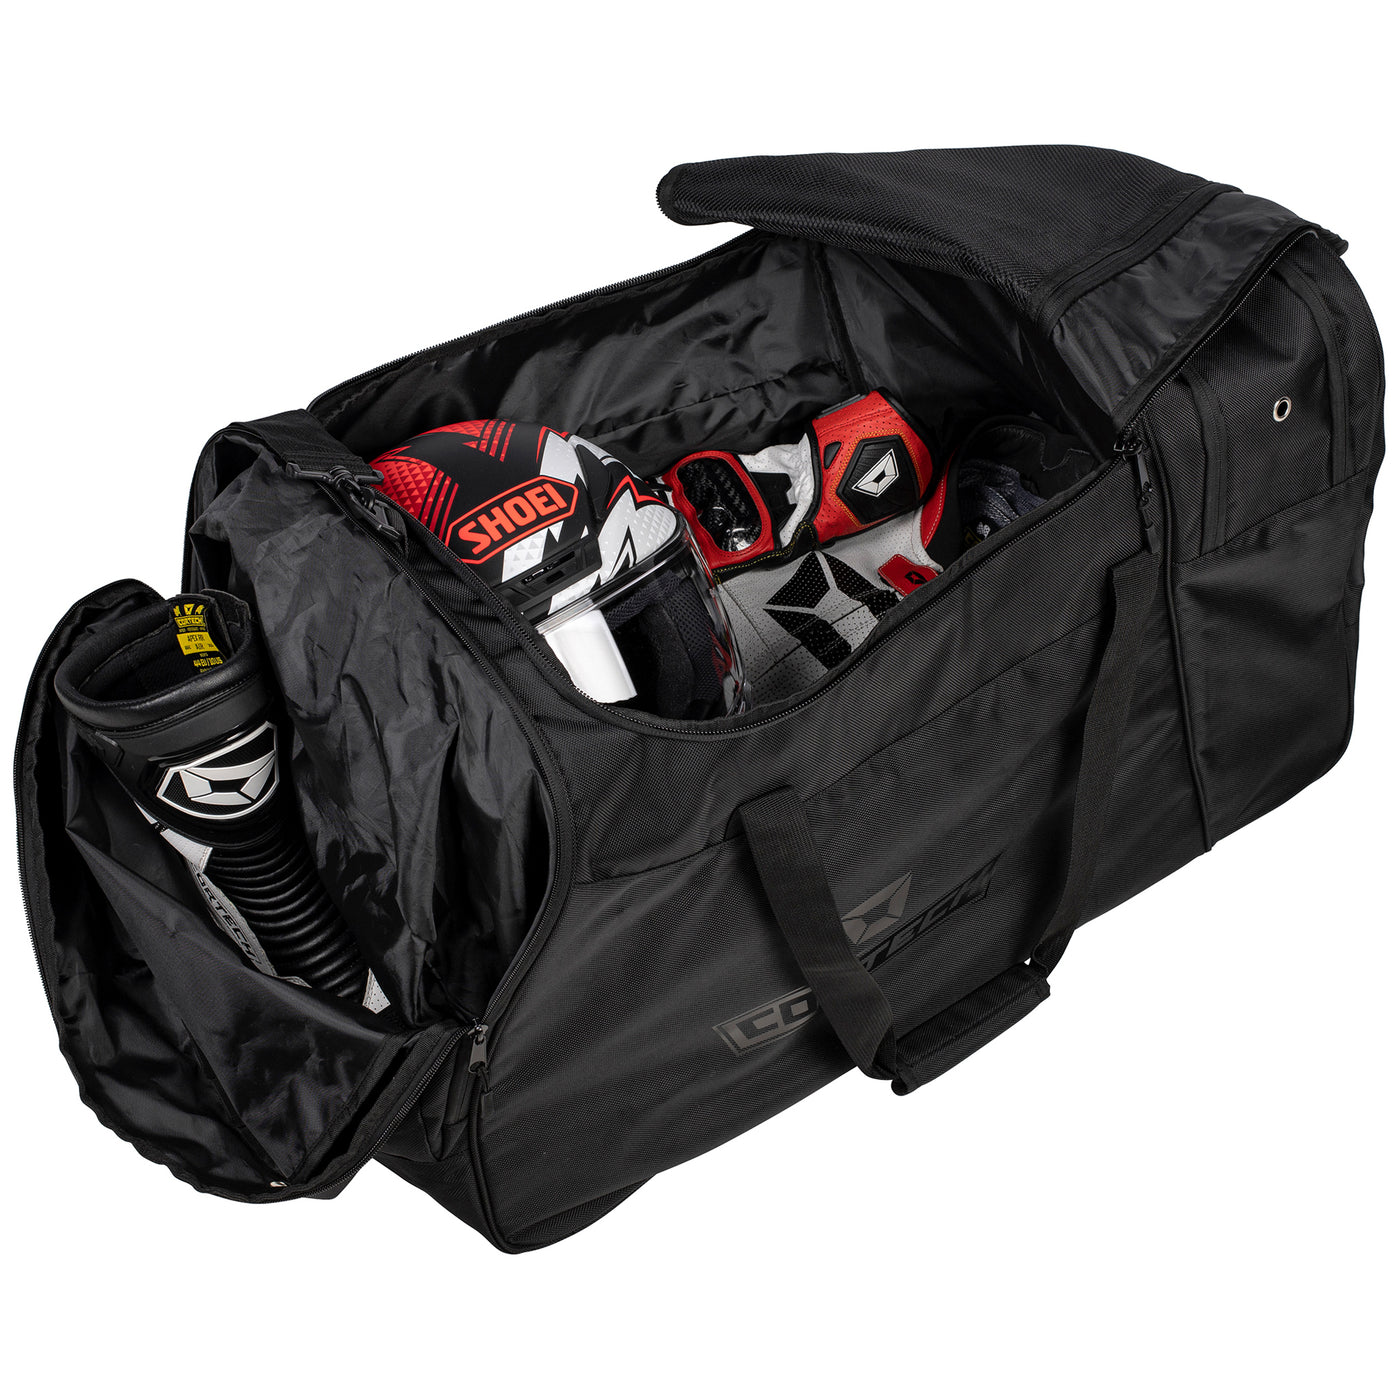 Cortech Tracker Roller Gear Bag